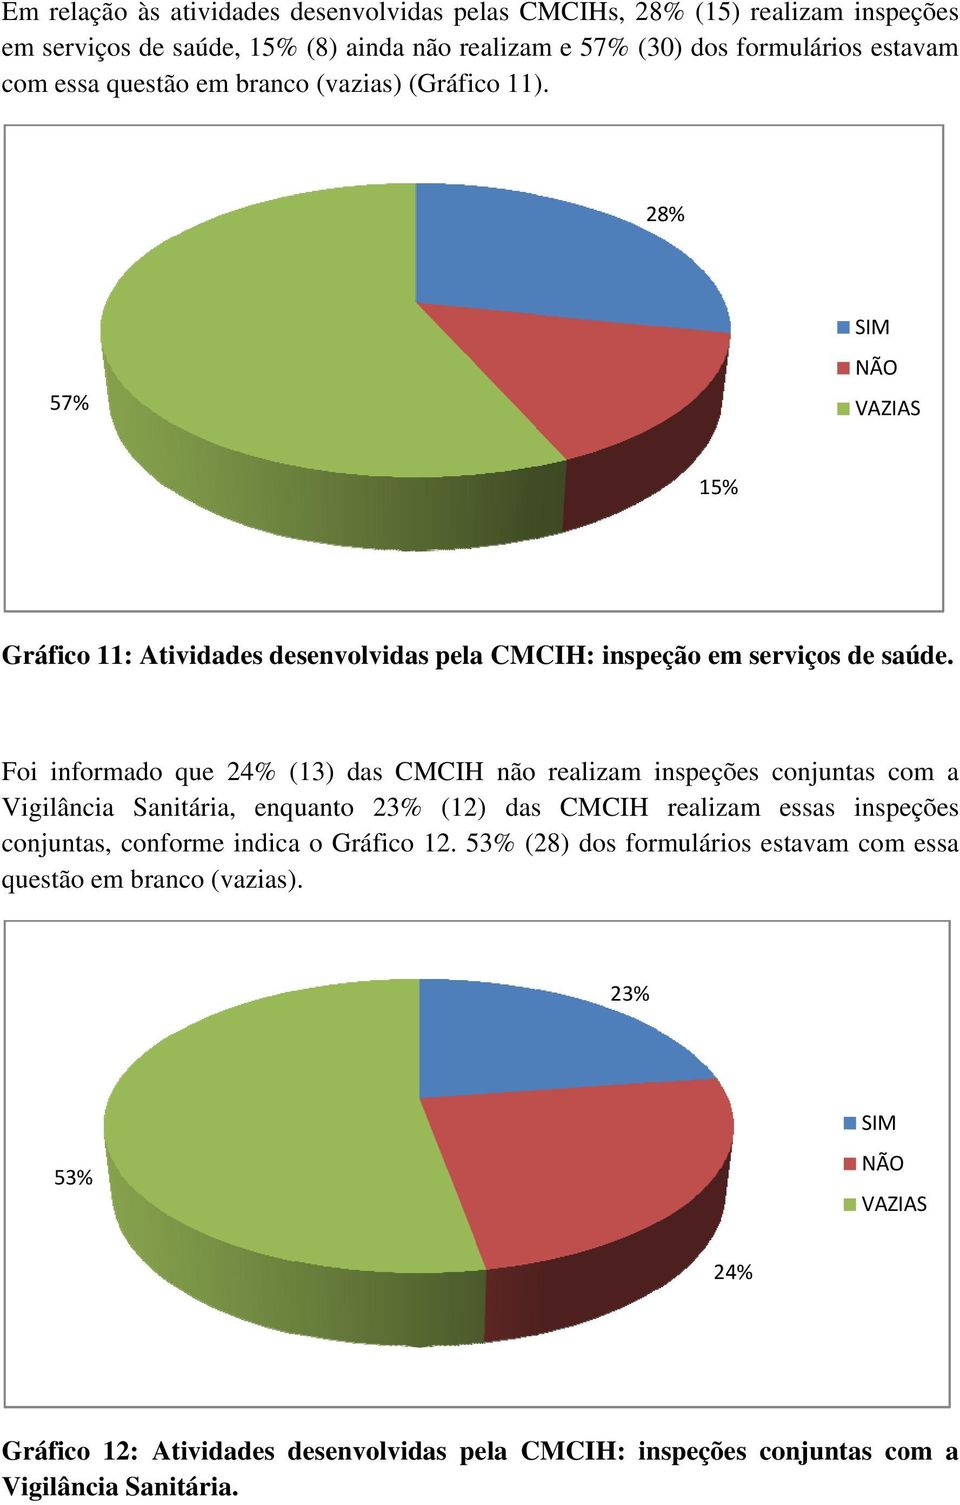 Foi informado que 24% (3) das CMCIH não realizam inspeções conjuntas com a Vigilância Sanitária, enquanto 23% (2) das CMCIH realizam essas inspeções conjuntas,